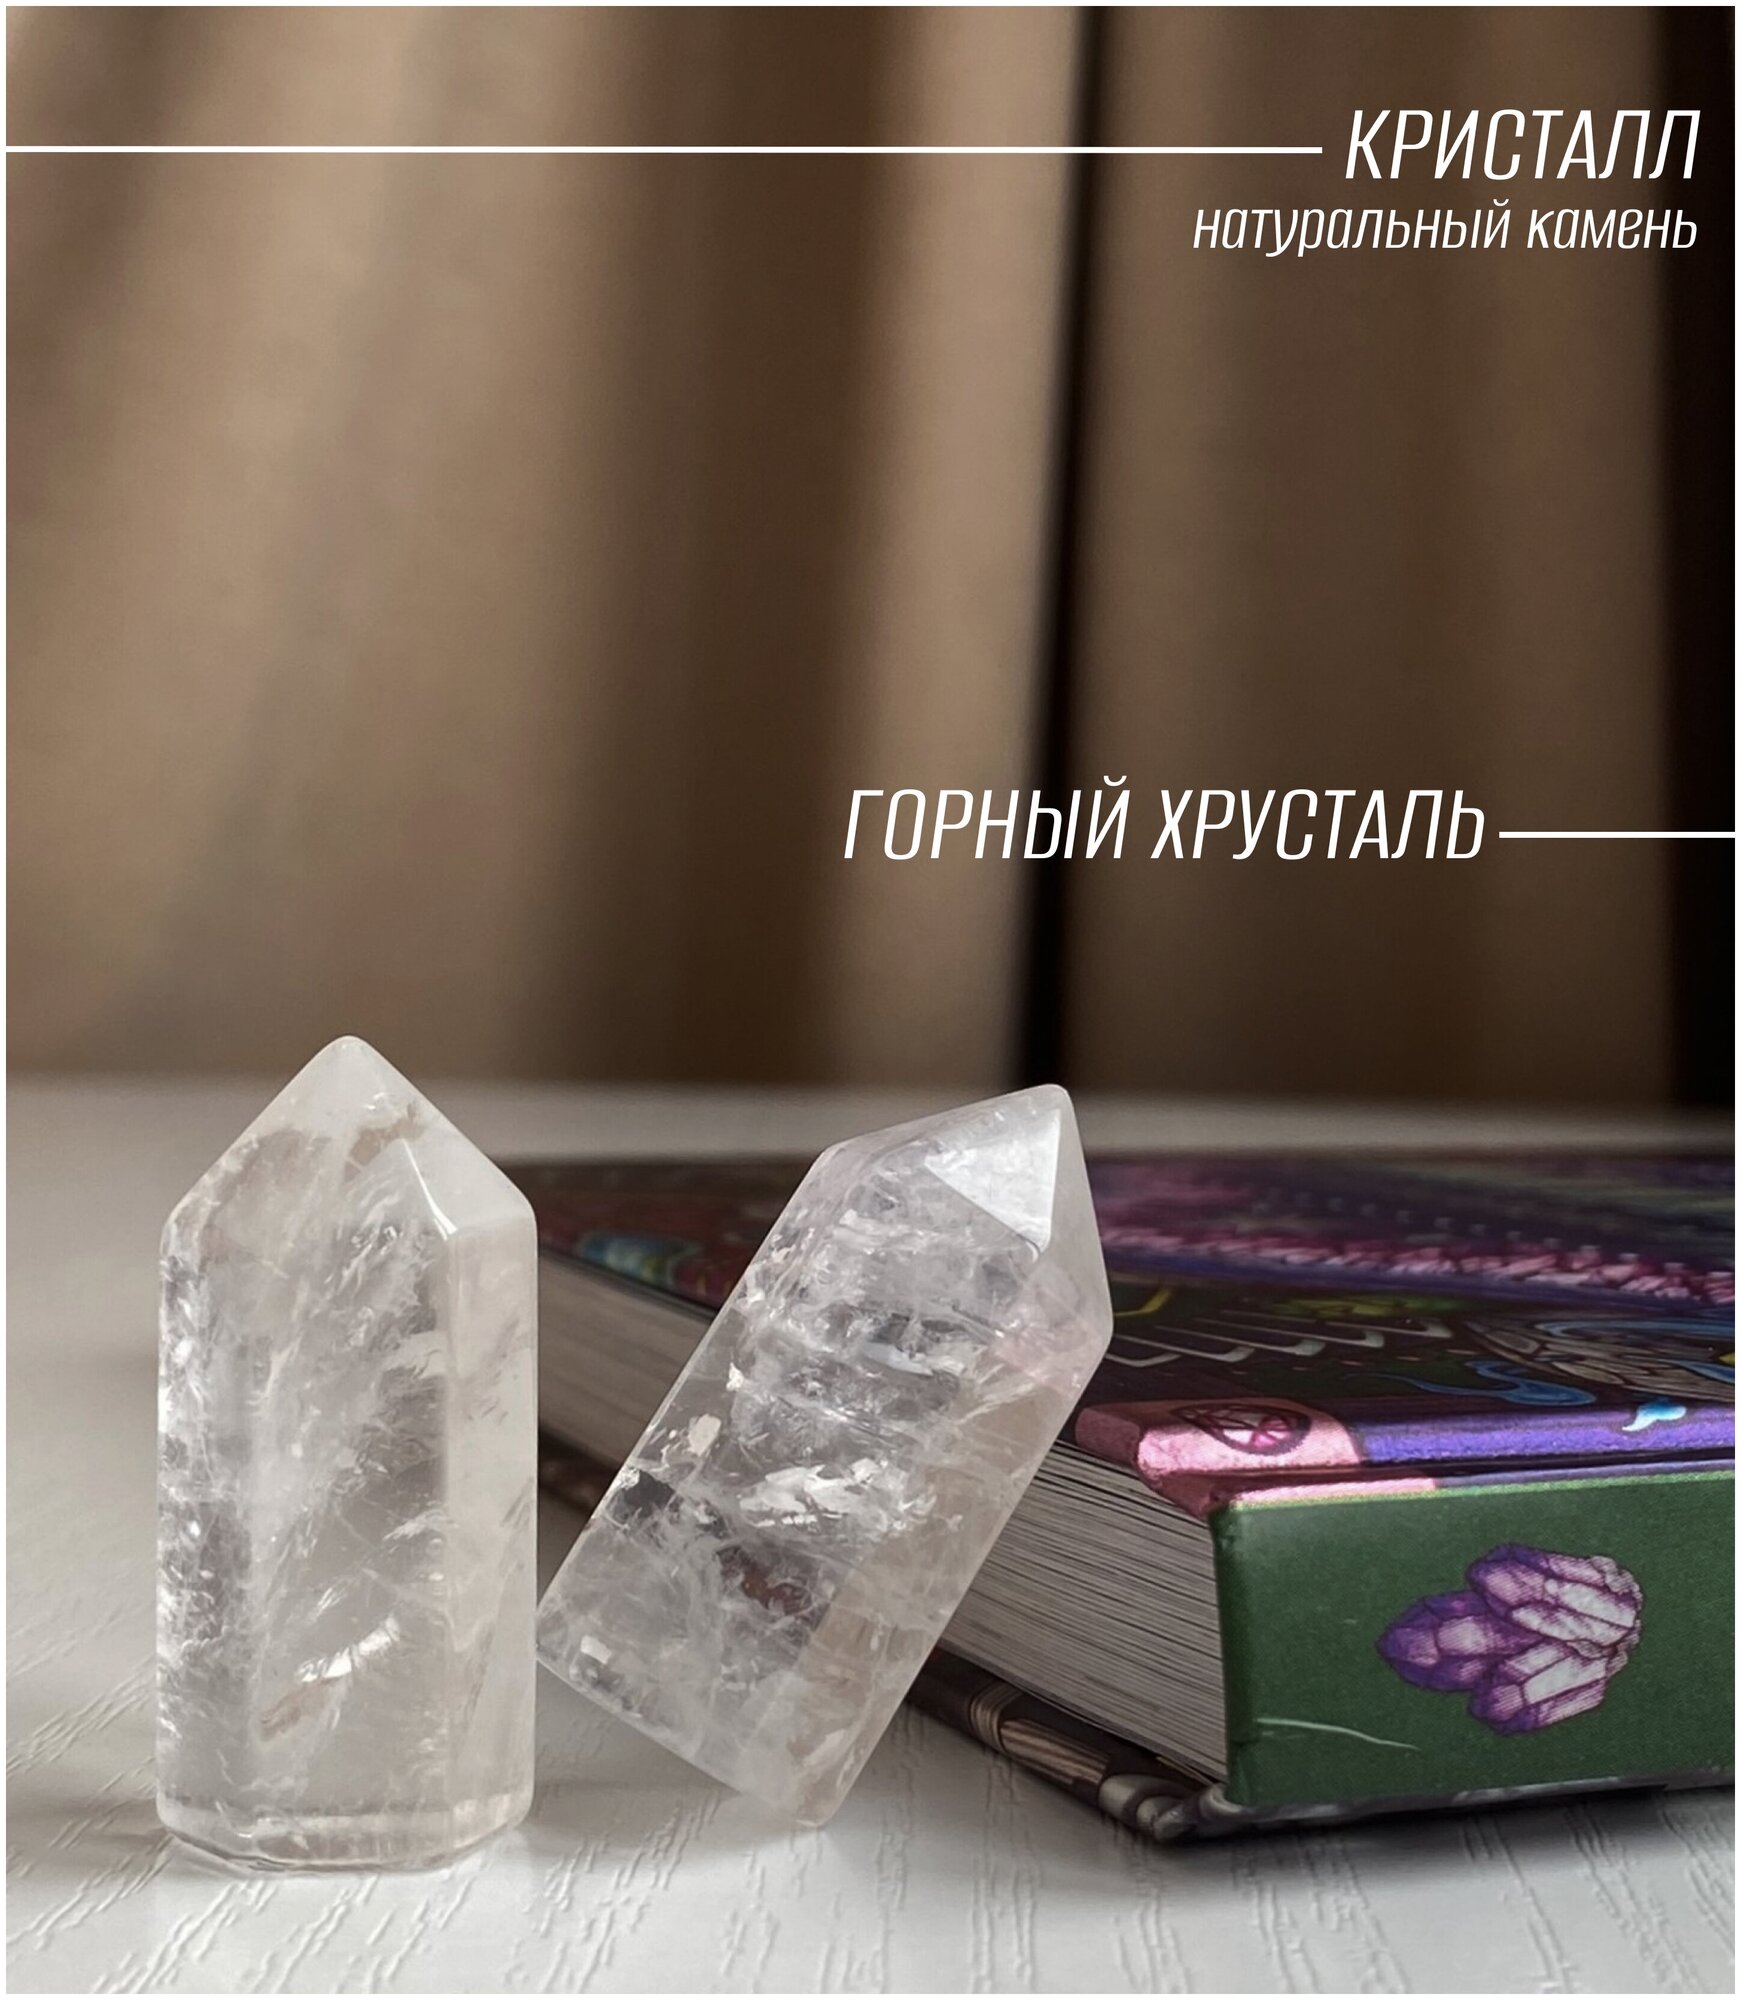 Горный хрусталь кристалл-генератор 3.5 см./ Натуральный природный камень с мешочком.